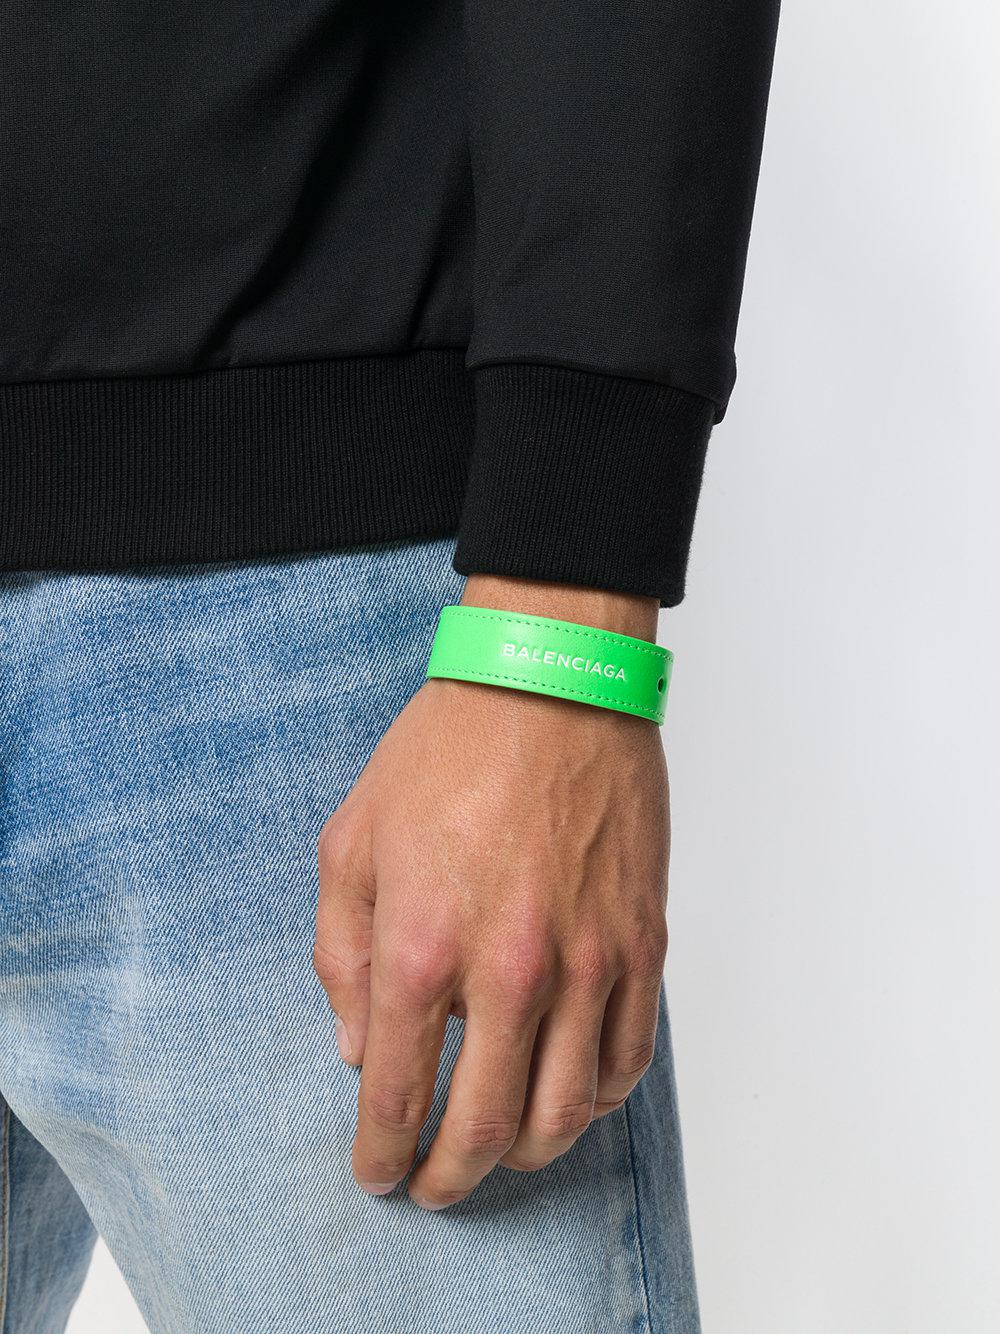 balenciaga bracelet green